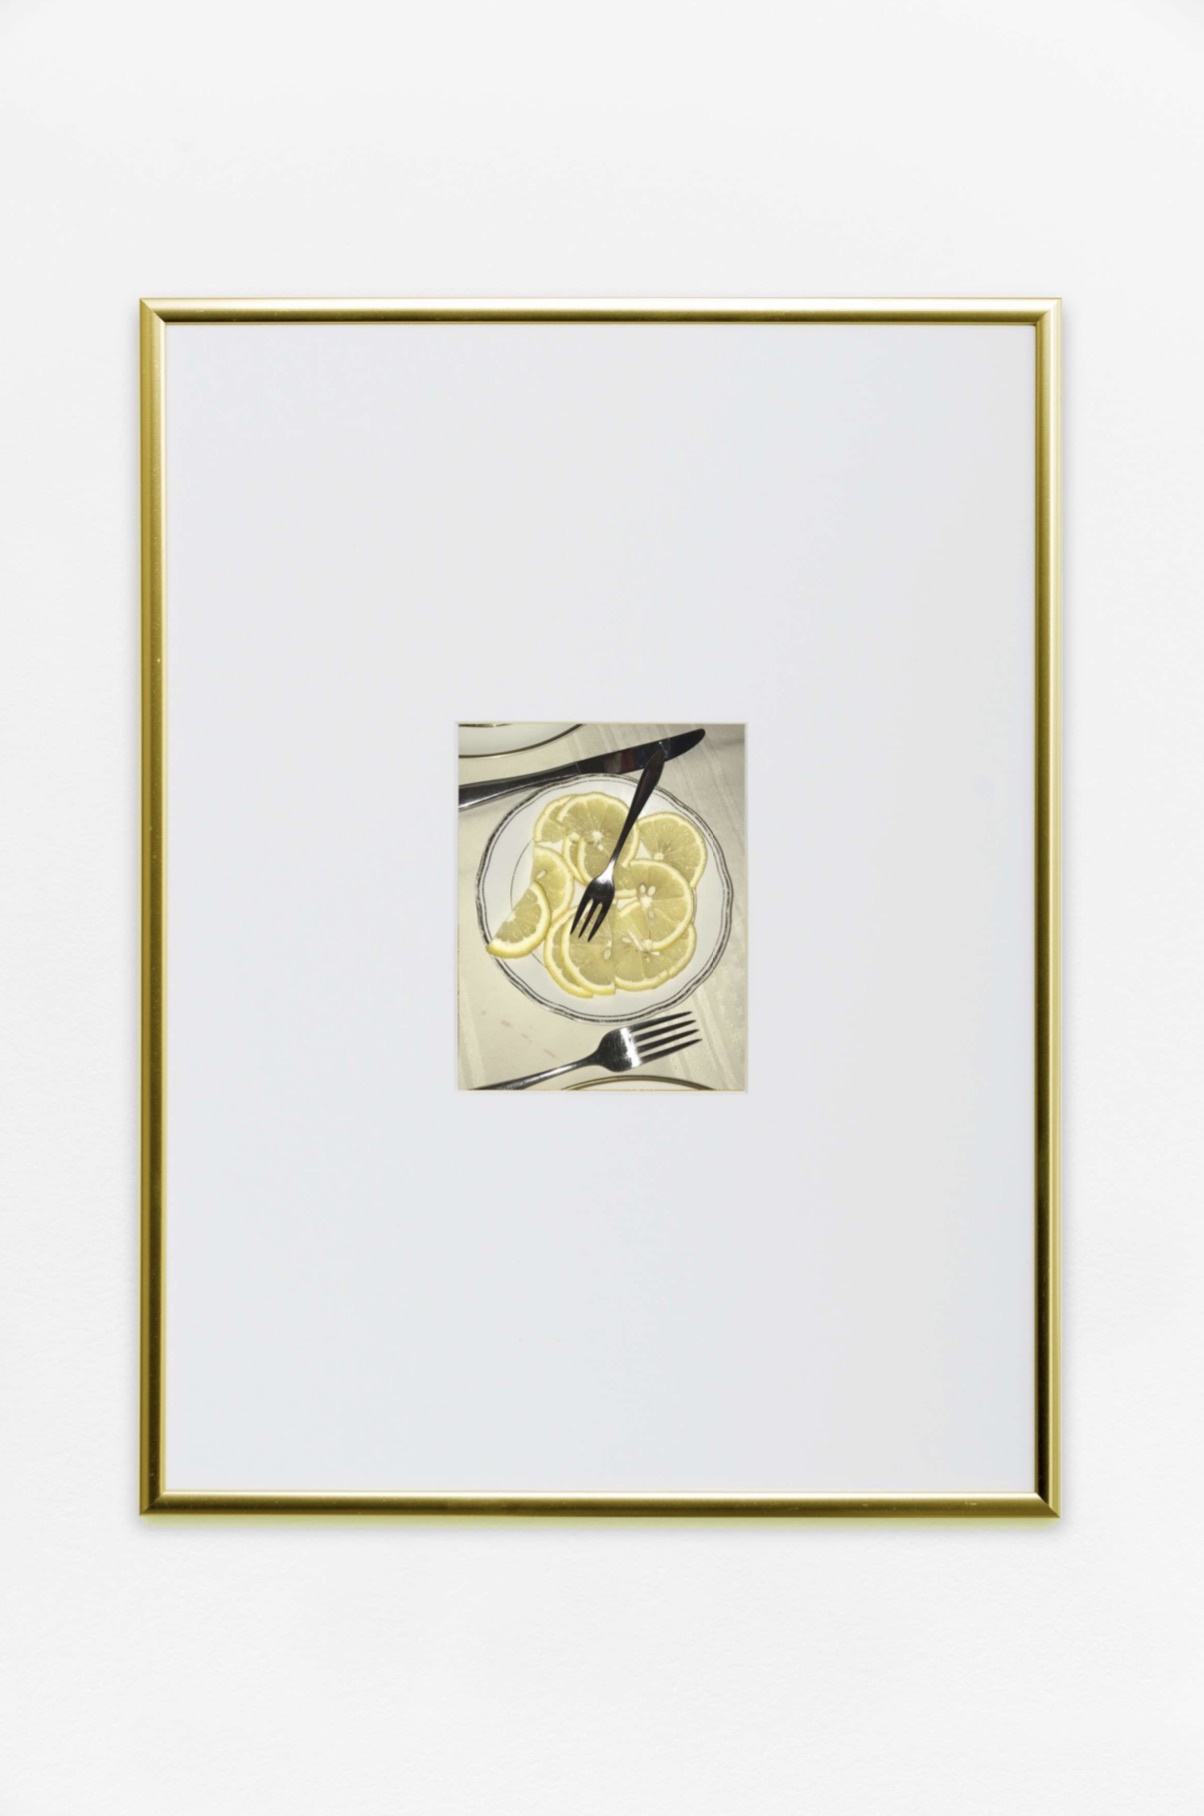 Hors-d’oeuvre, 2018, C-print on baryta Hahnemülhe paper, golden aluminium frame Cm. 12,5 x 10 (print); cm. 40 x 30 (frame),